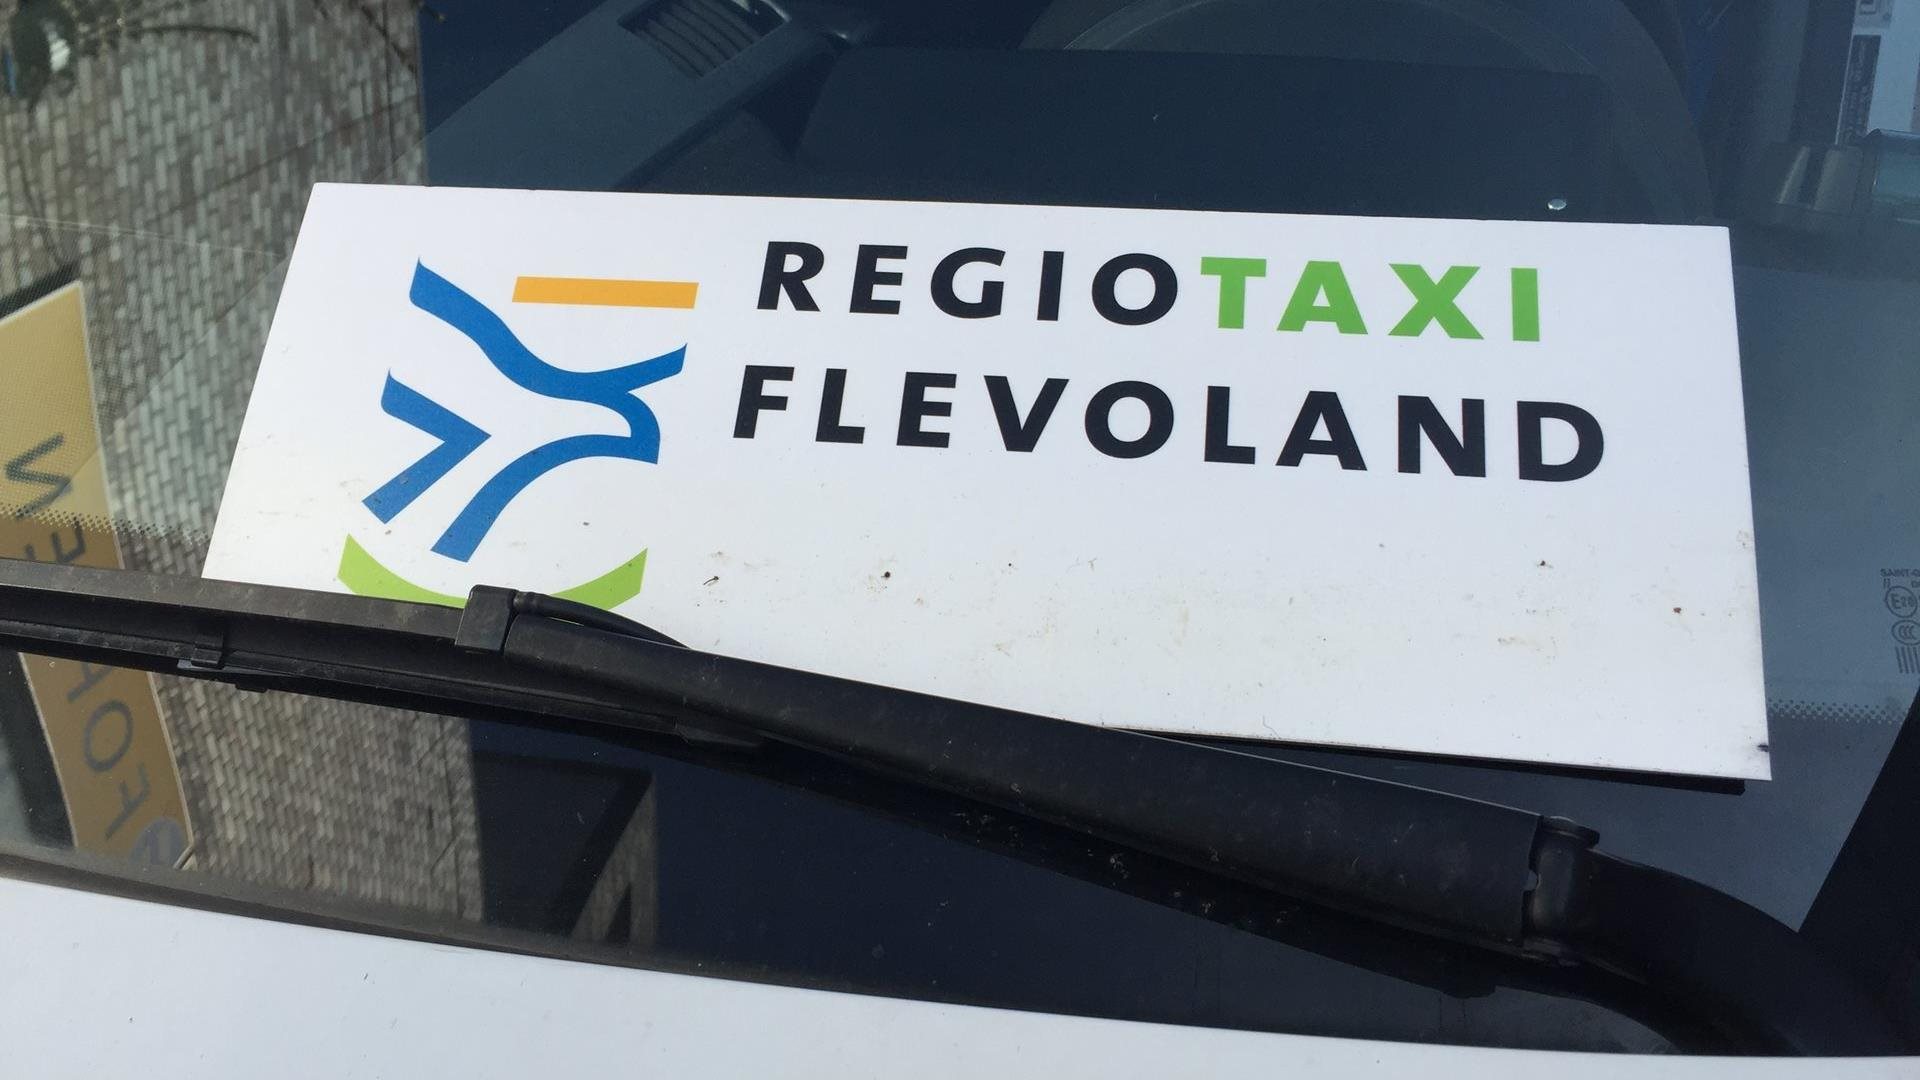 Bordje met tekst Regiotaxi Flevoland erop